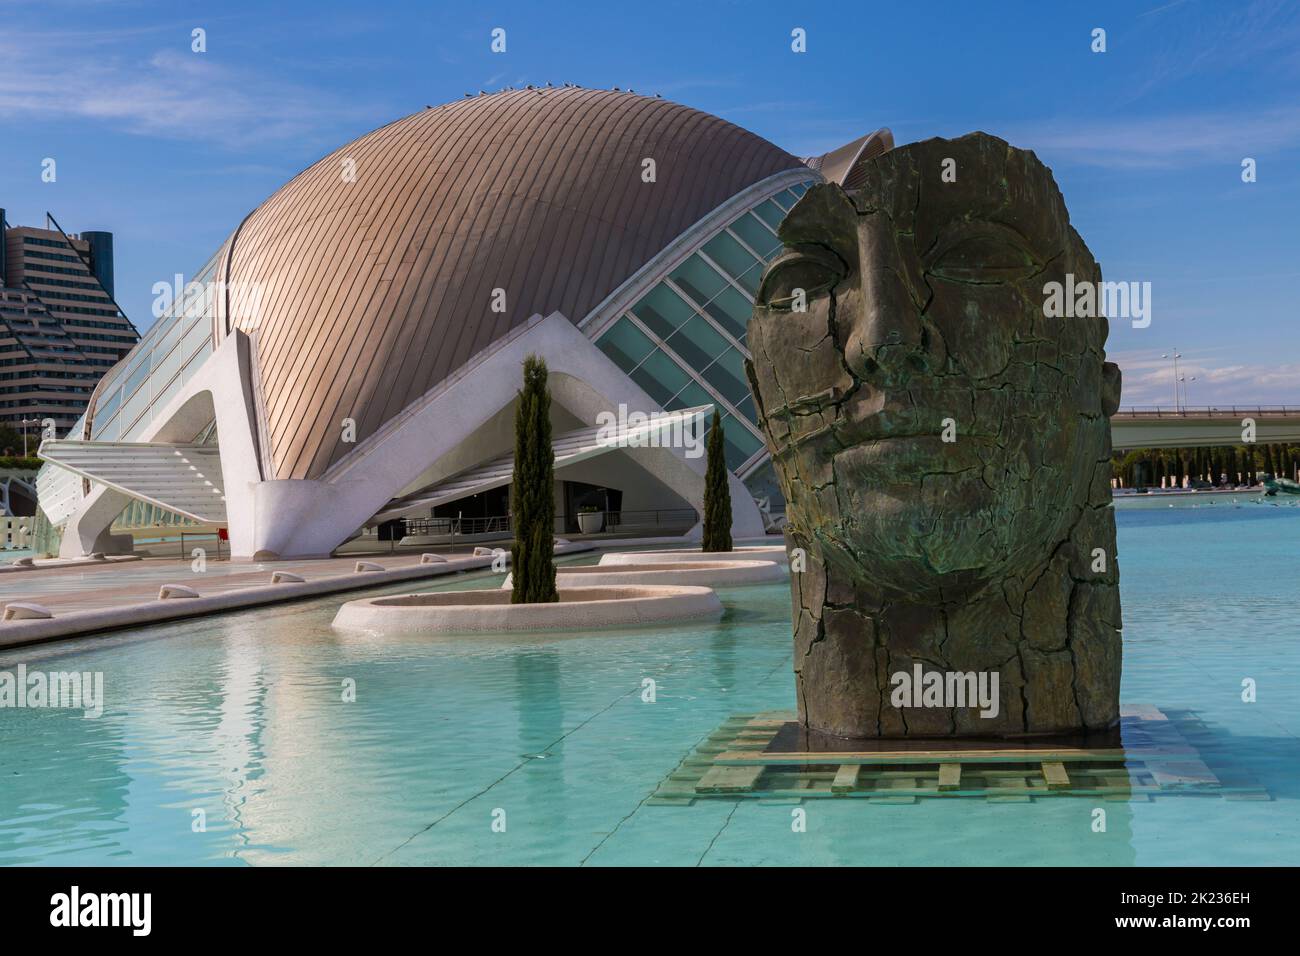 Escultura facial de Hemisfèric, un cine digital 3D, en la Ciudad de las Artes y las Ciencias de Valencia, en septiembre Foto de stock